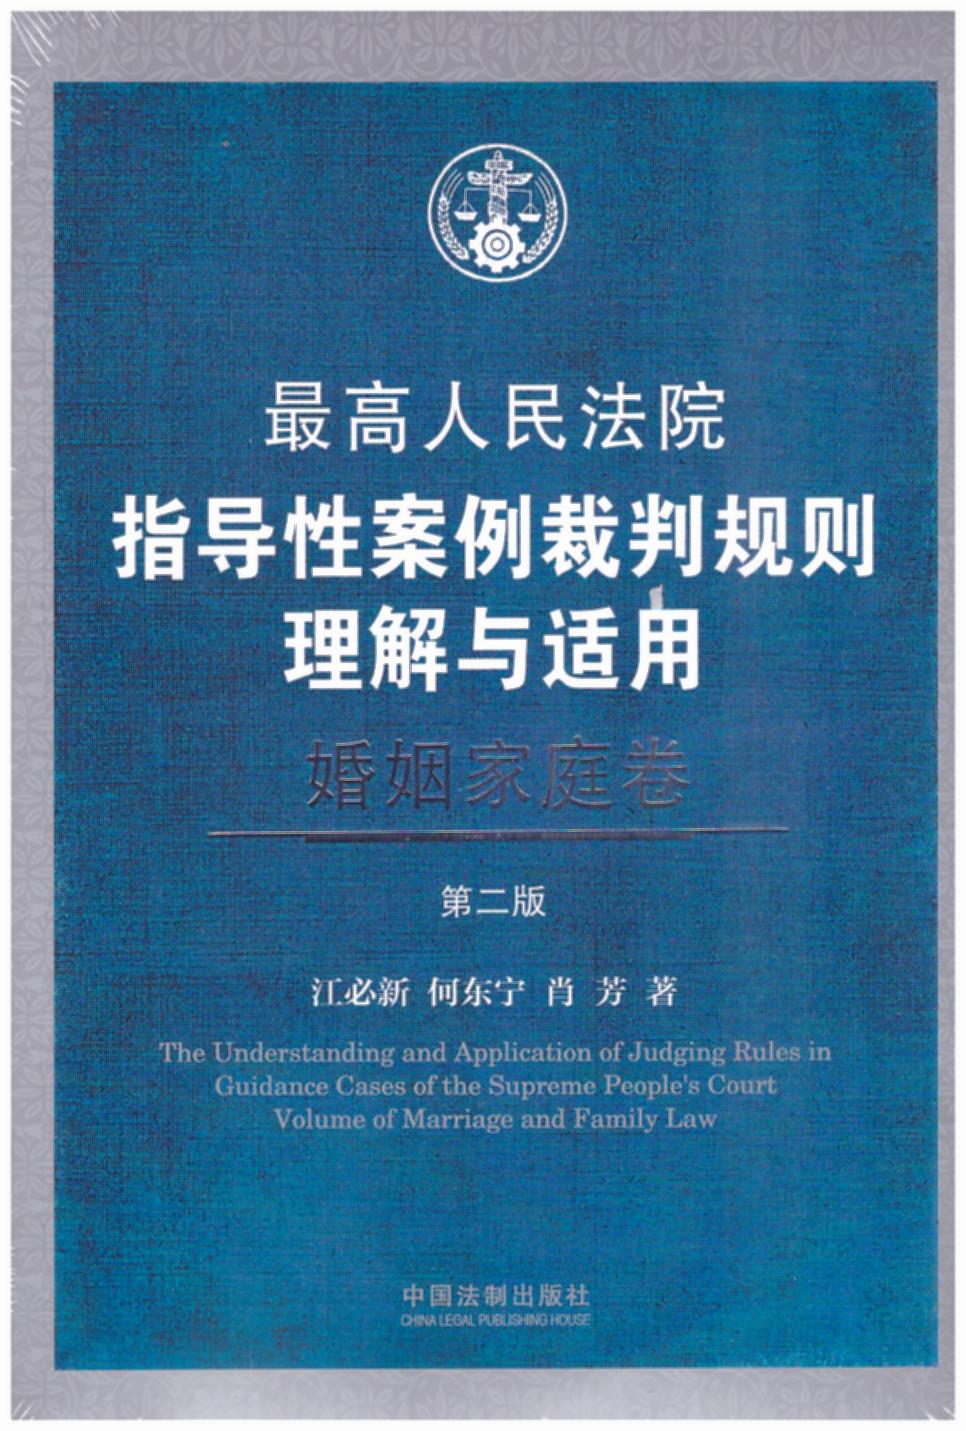 最高人民法院指导性案例裁判规则理解与适用・婚姻家庭卷【第2版